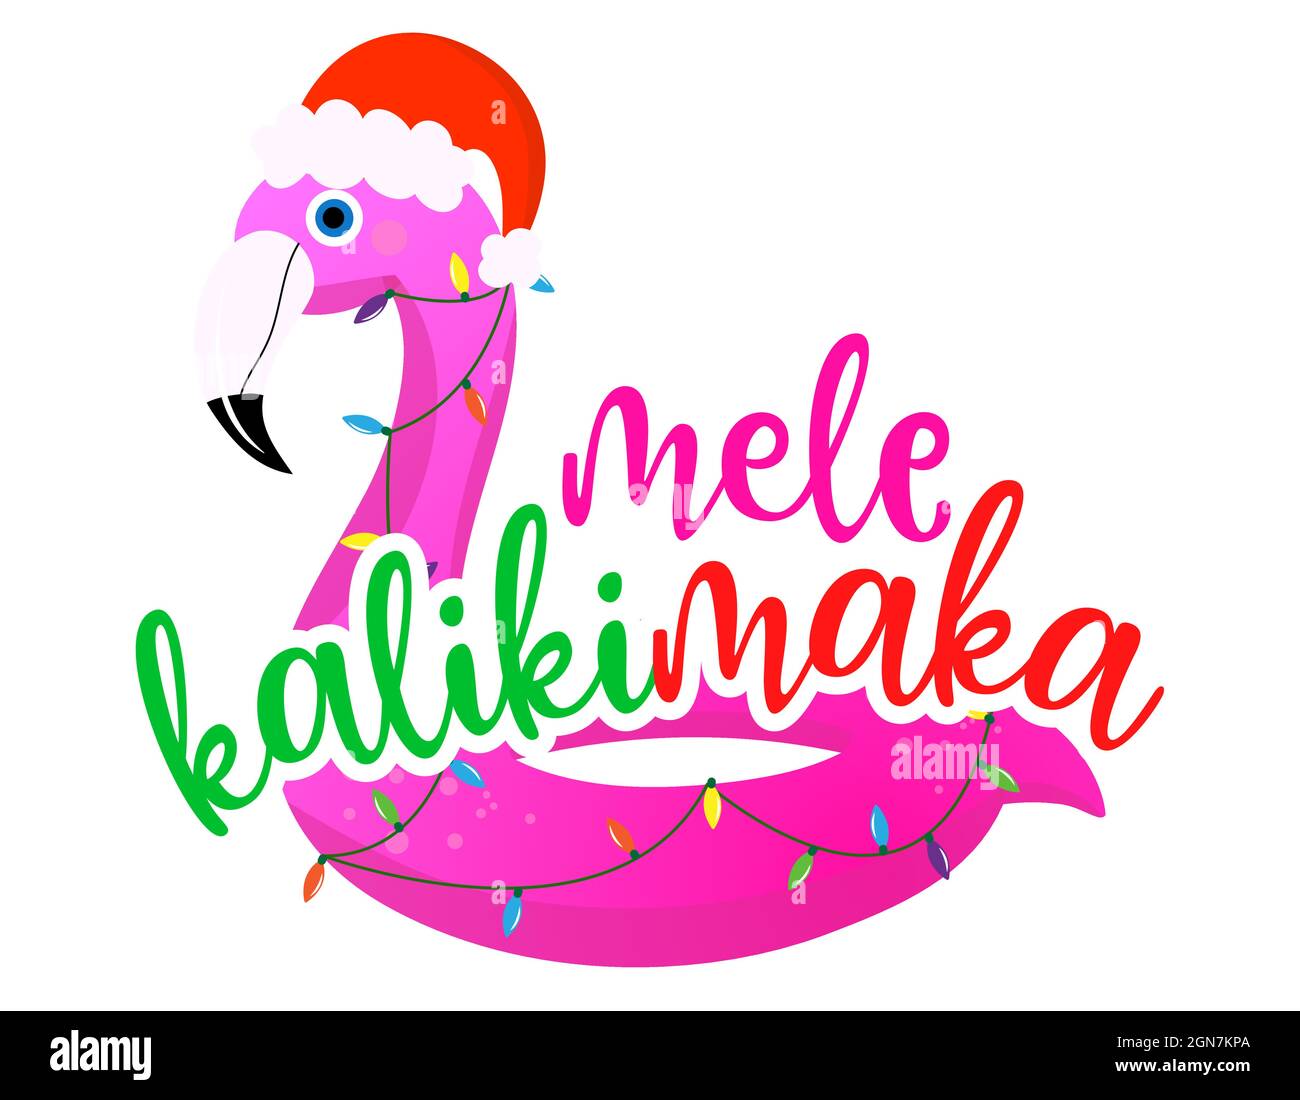 Mele Kalikimaka (Joyeux Noël à Hawaï) - expression pour Noël avec un joli flotteur de flamants de flamants de flamants de flamants de flamants de flamants Lettrage dessiné à la main pour carte de voeux de Noël, invitations Illustration de Vecteur